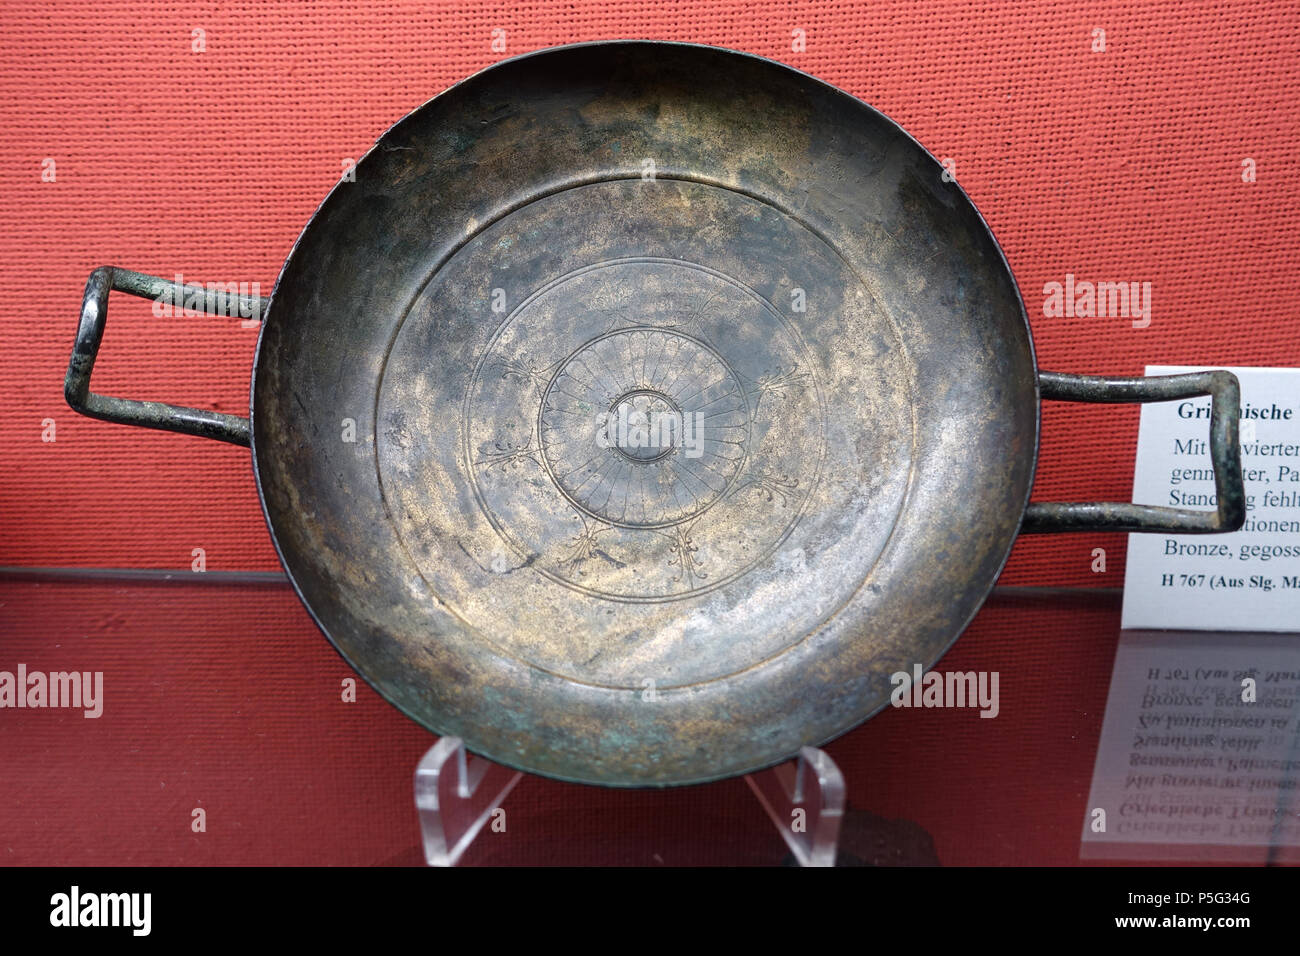 480 Drinking bowl, Greek, 450-400 BC, bronze, H 767 - Martin von Wagner Museum - Würzburg, Germany - DSC05909 Stock Photo